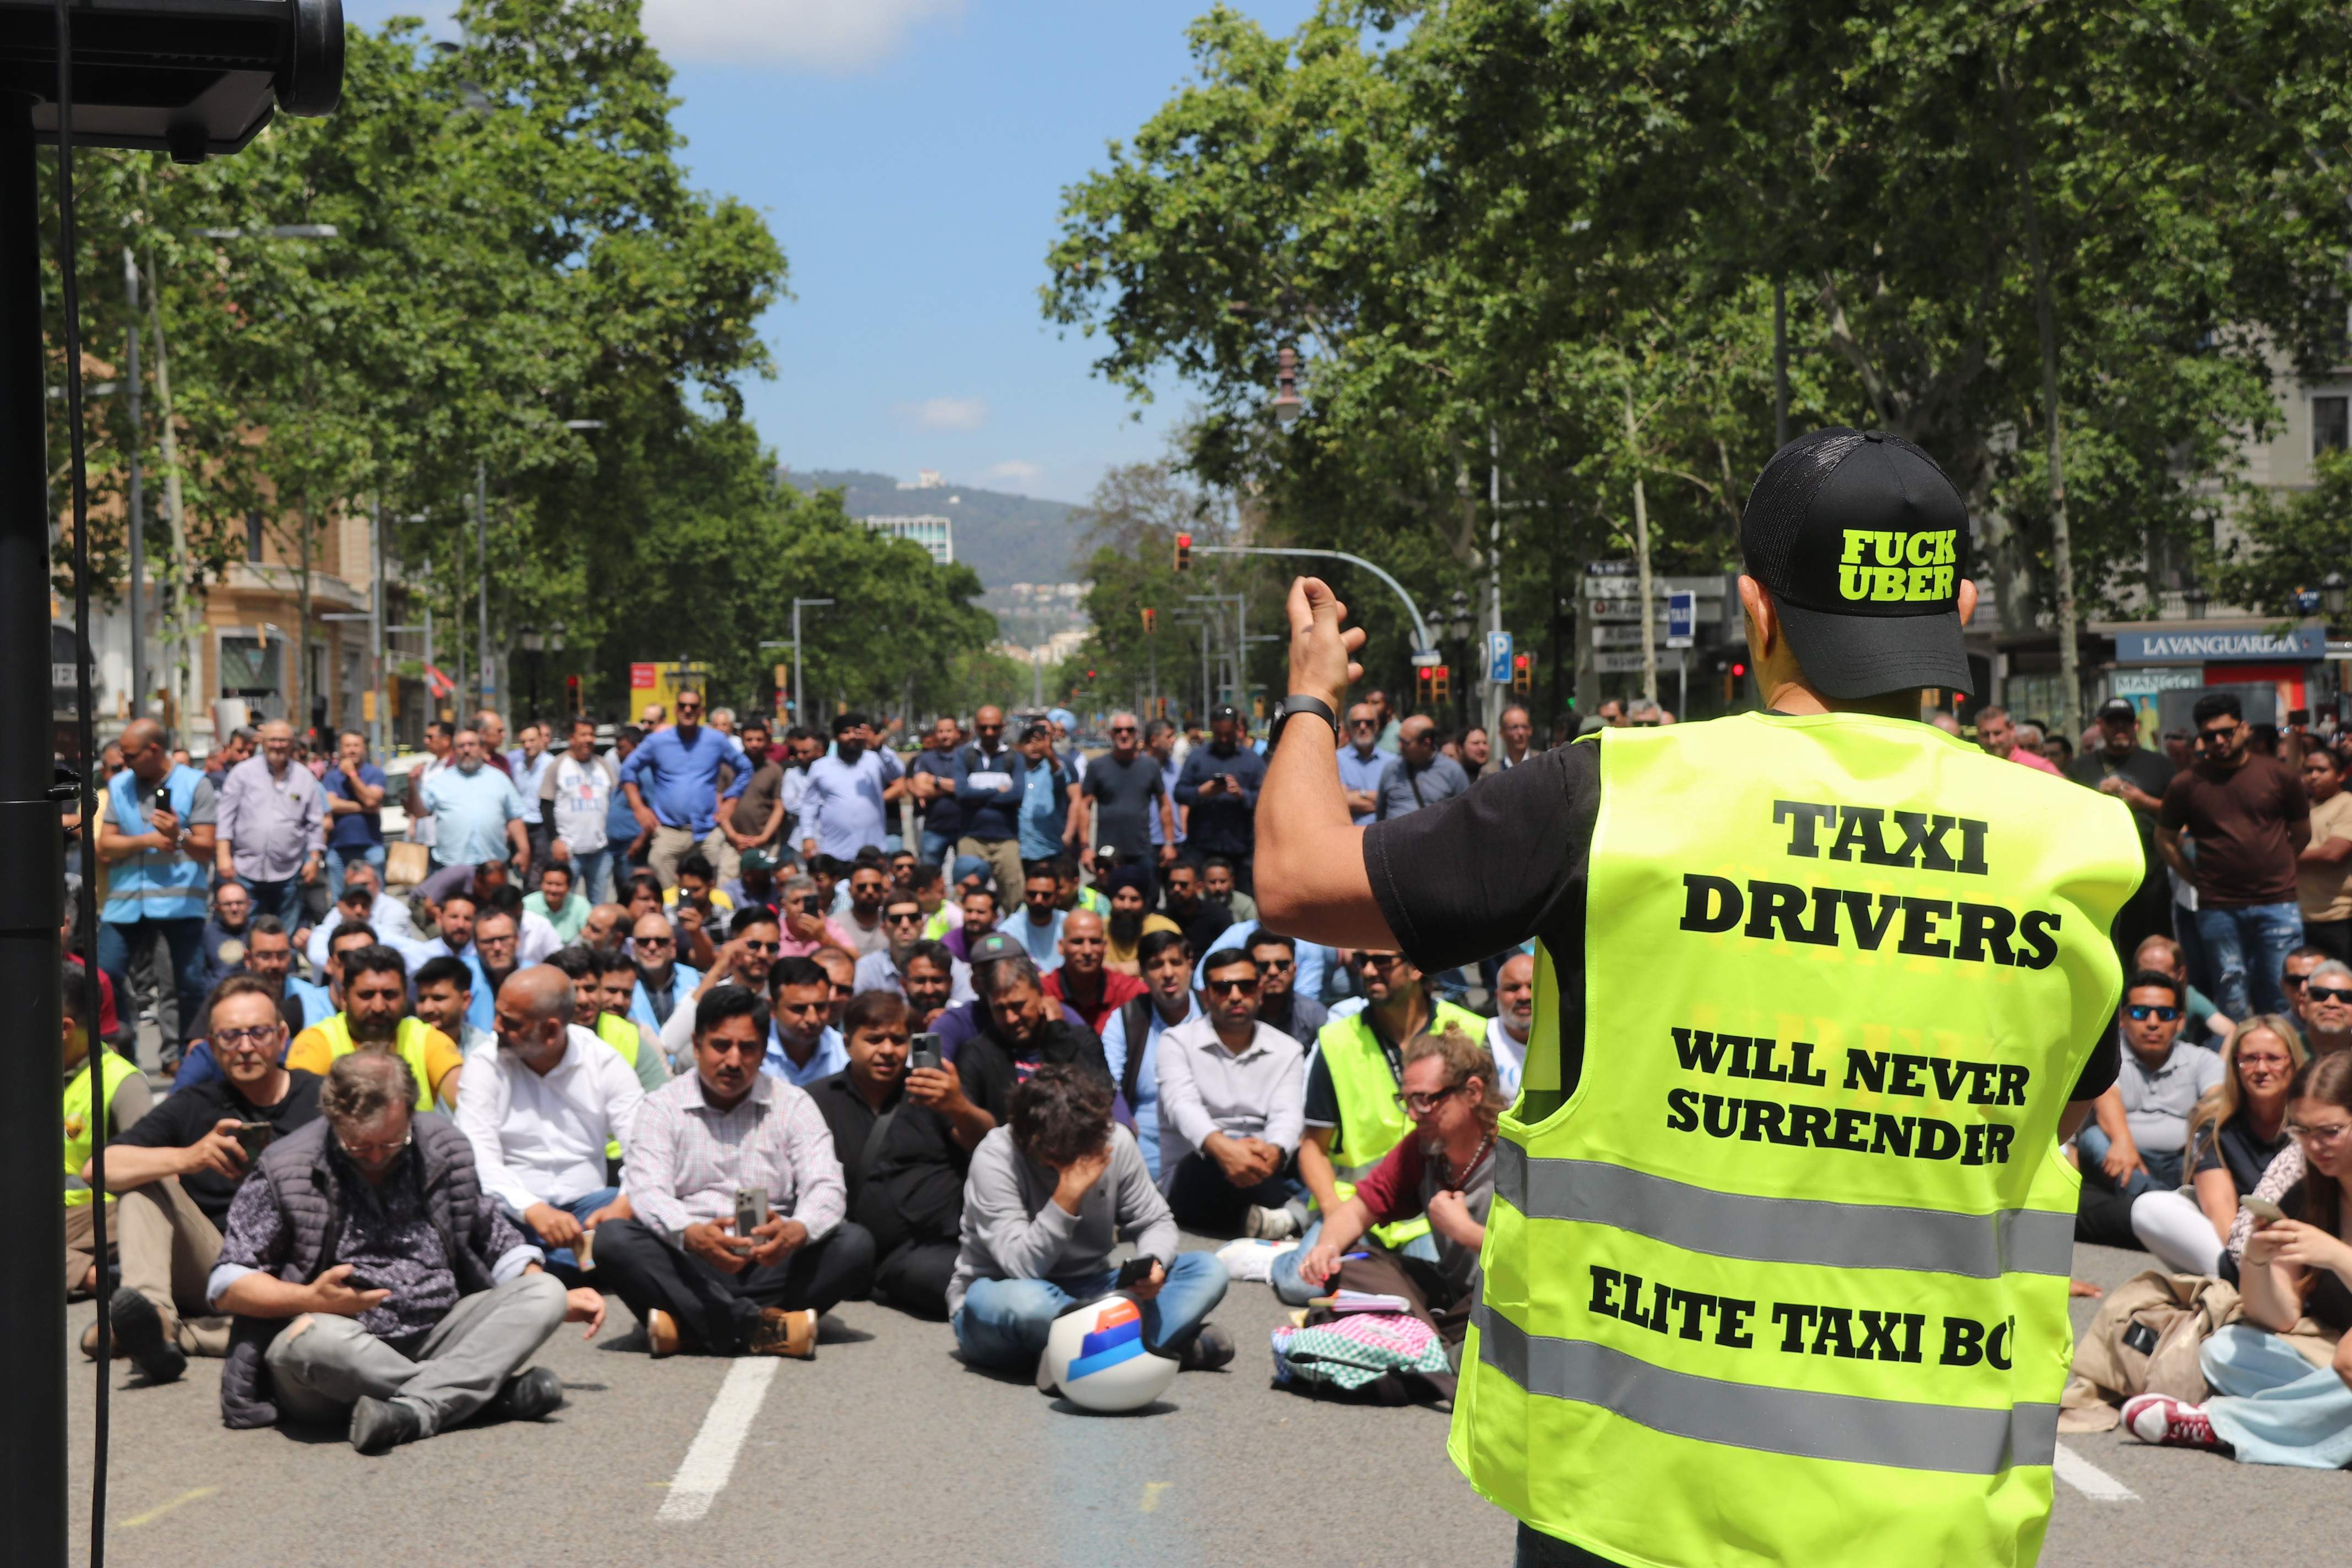 Convocan una huelga de taxis para el martes que amenaza con un caos circulatorio en el centro de Barcelona